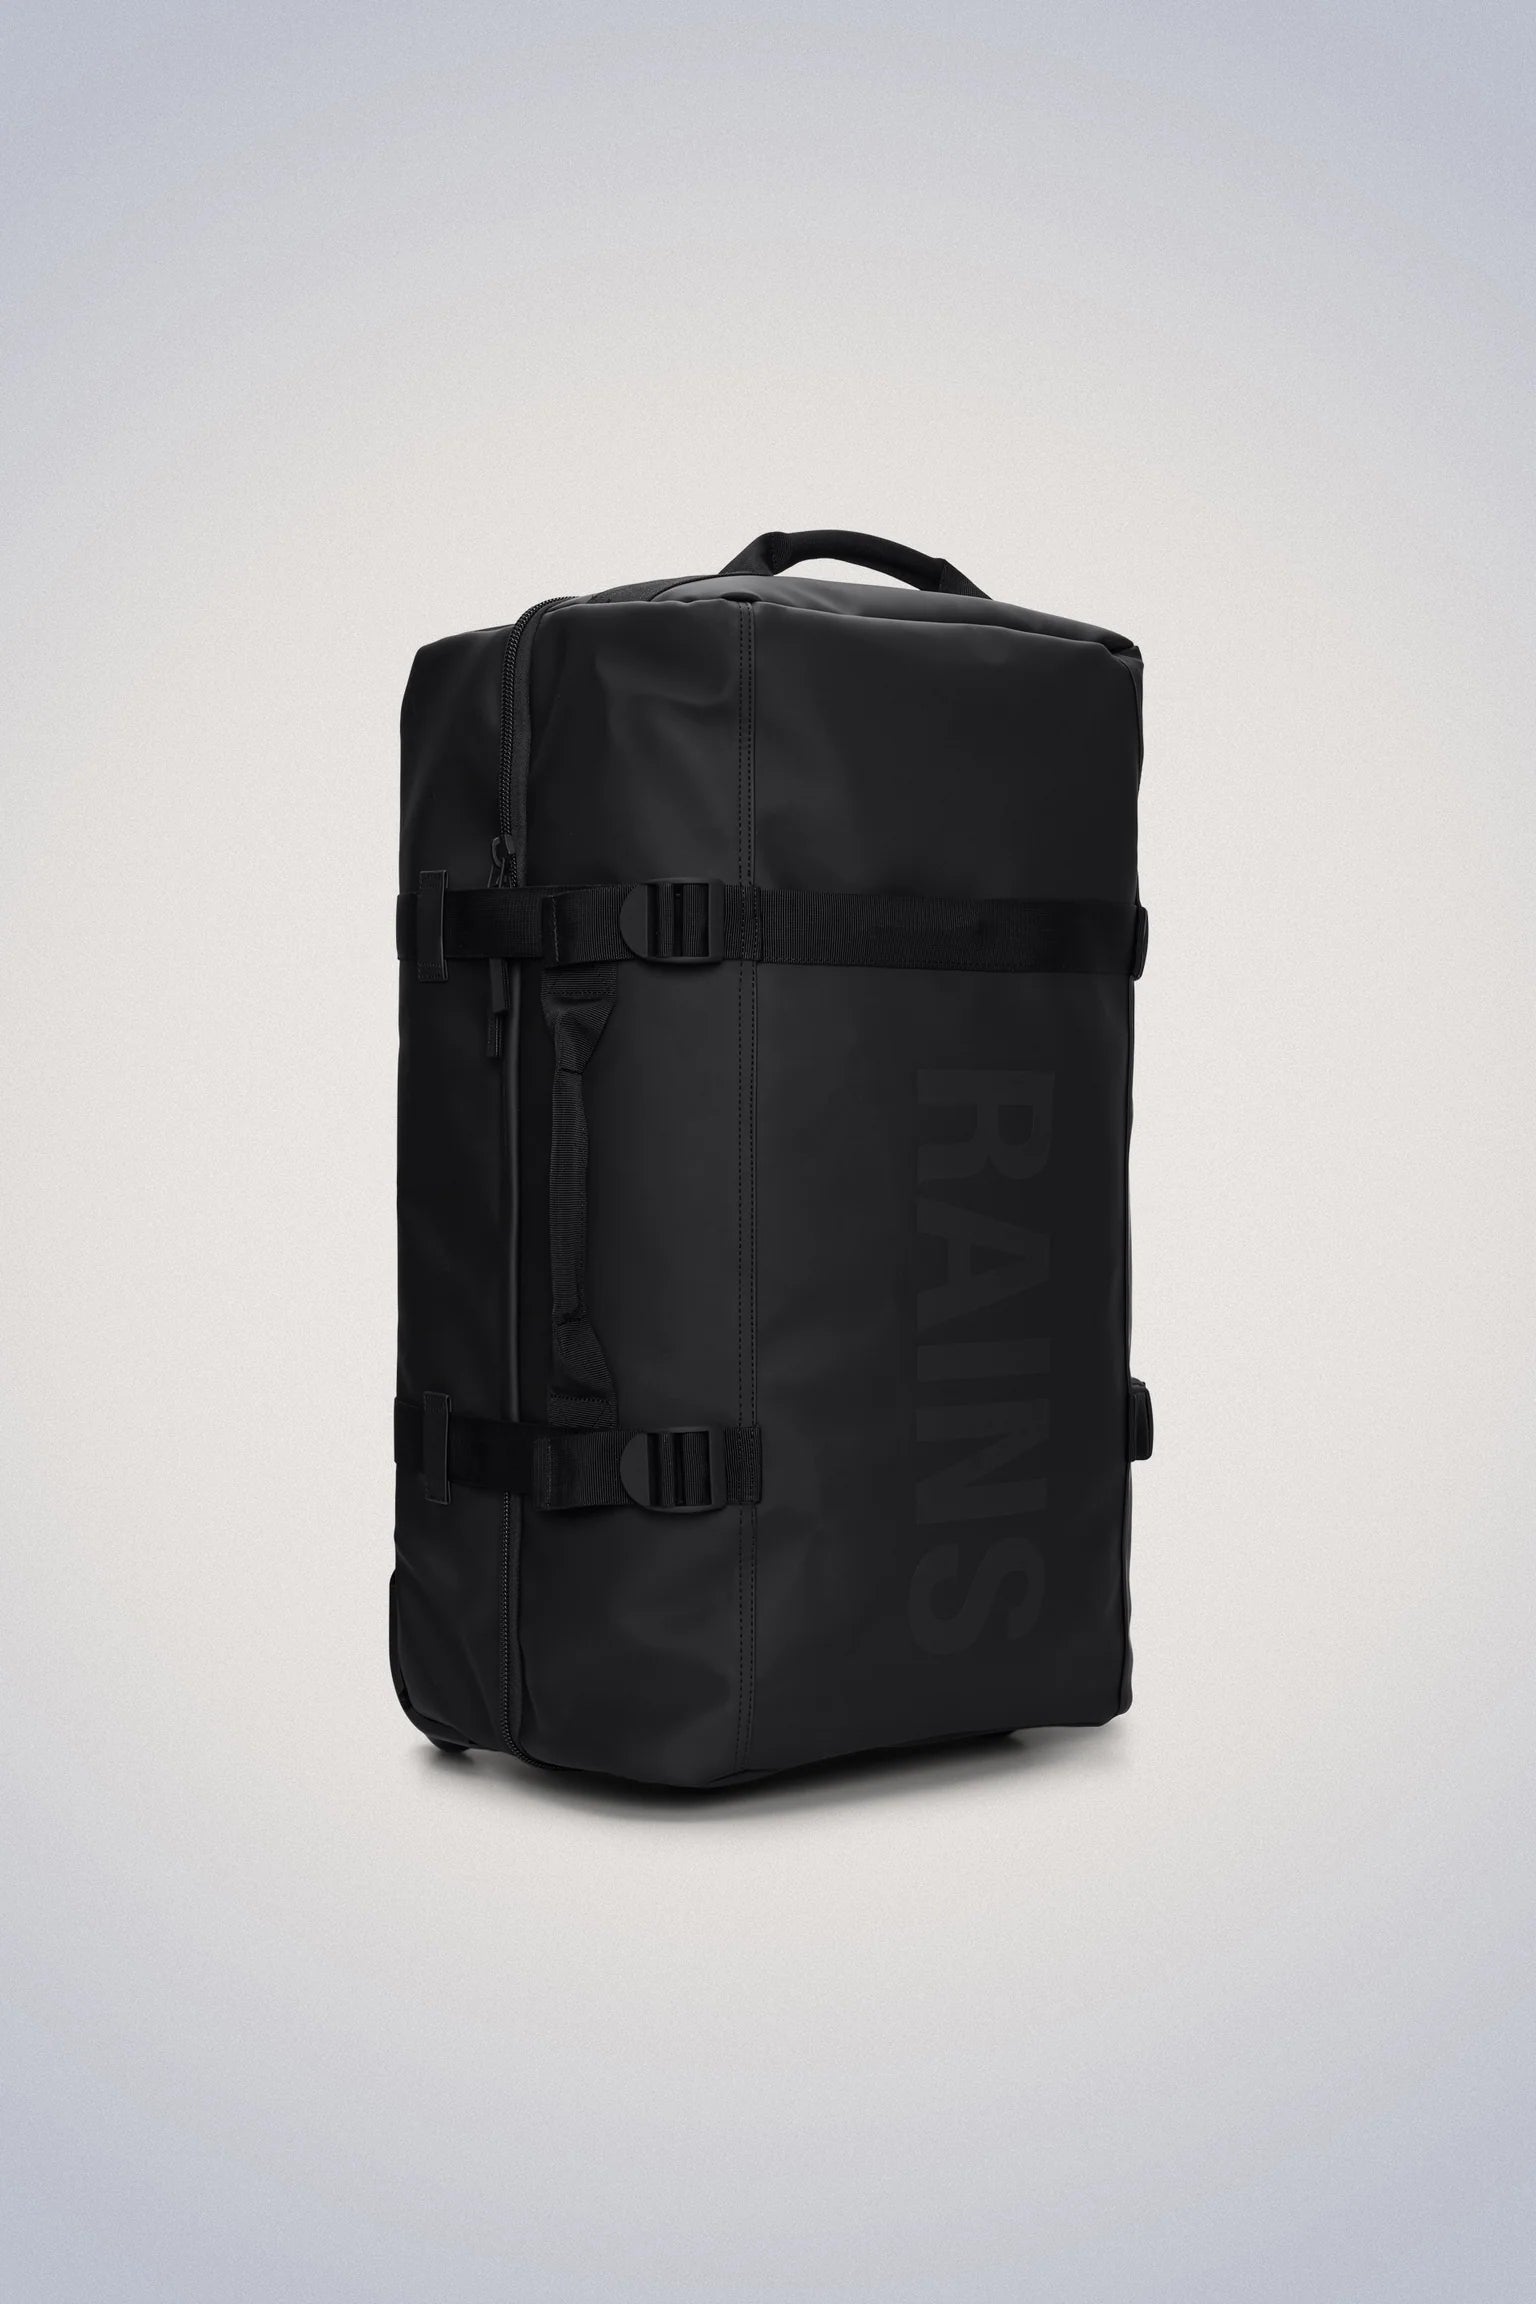 Koffert | Svart | Mellomstørrelse | Vanntett | To hjul | Texel Check-in Bag